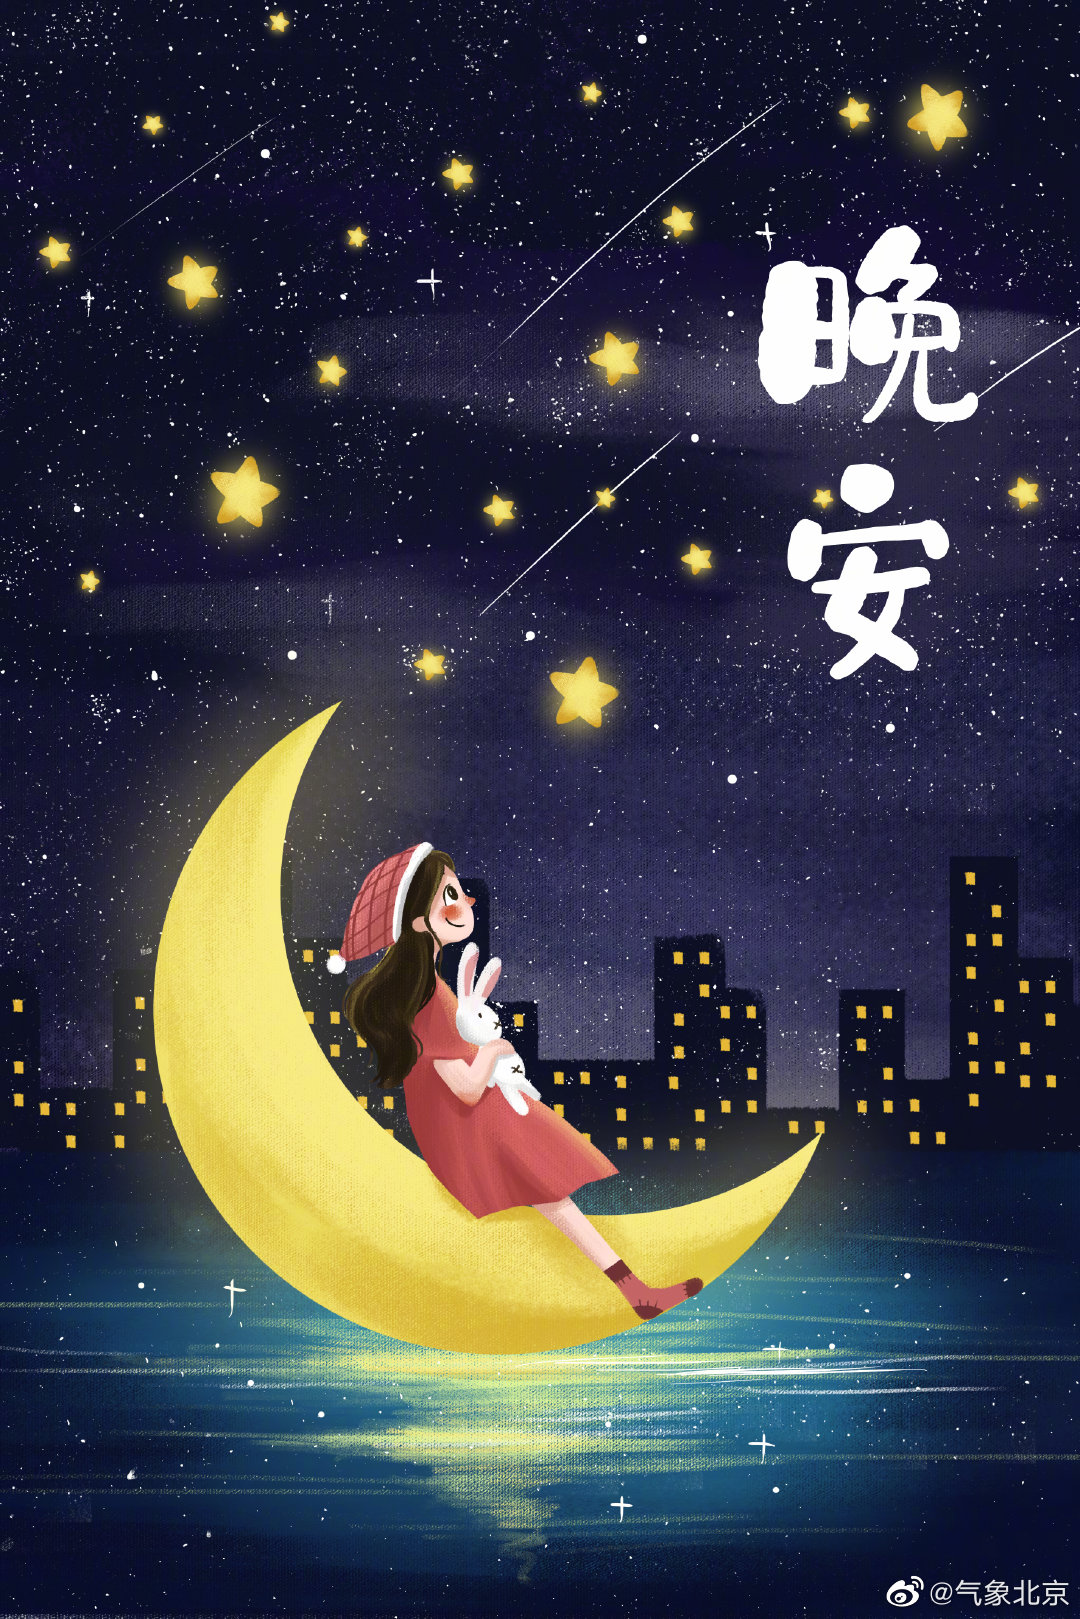 各色月亮高悬空中唯美夜景晚安主题桌面壁纸【5】 - 壁纸 - 亿图全景图库